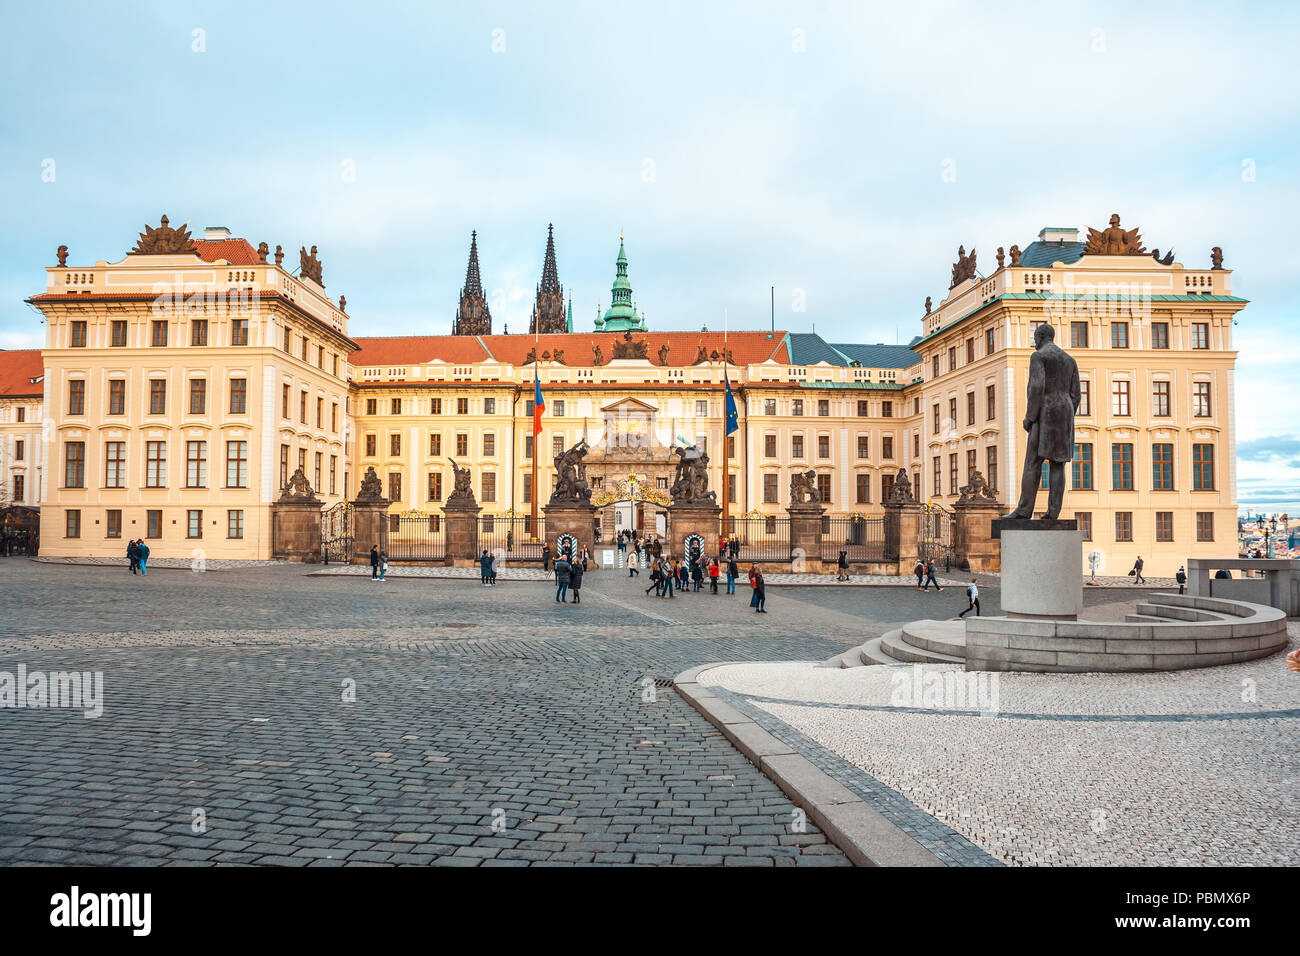 24.01.2018 Praga, República Checa - La residencia del presidente de la República Checa en el Castillo de Praga. Foto de stock